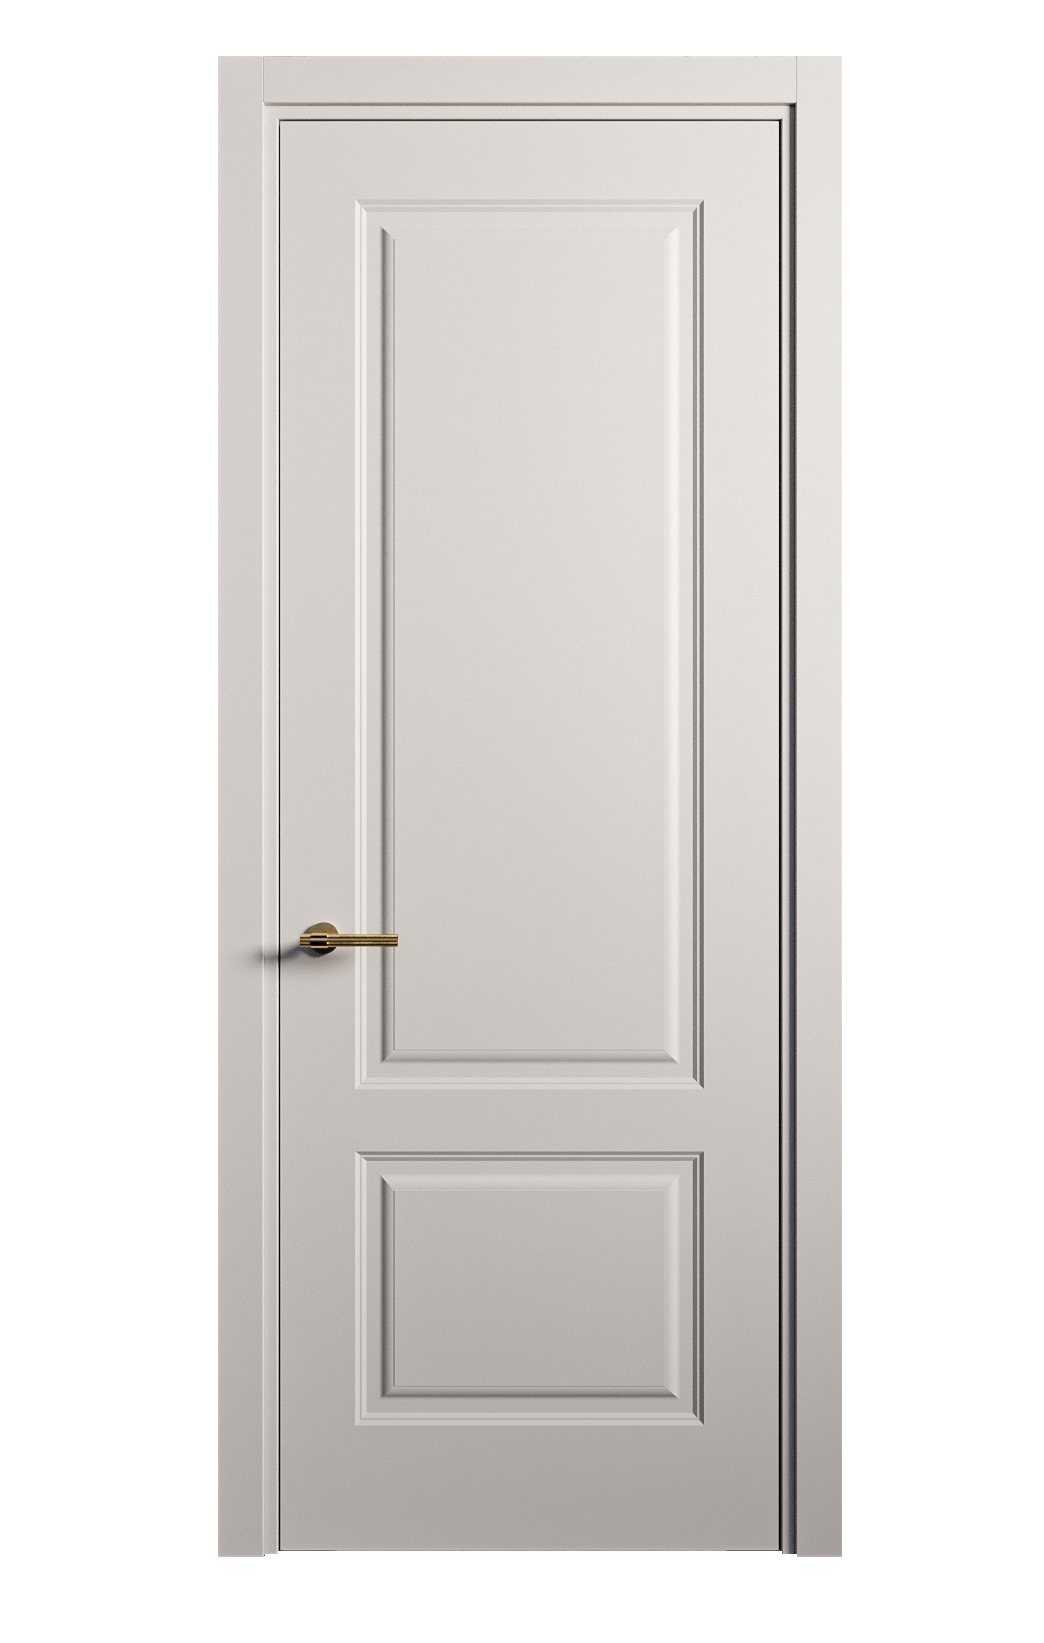 Межкомнатная дверь Вита-1 глухая эмаль ral 7047 26309